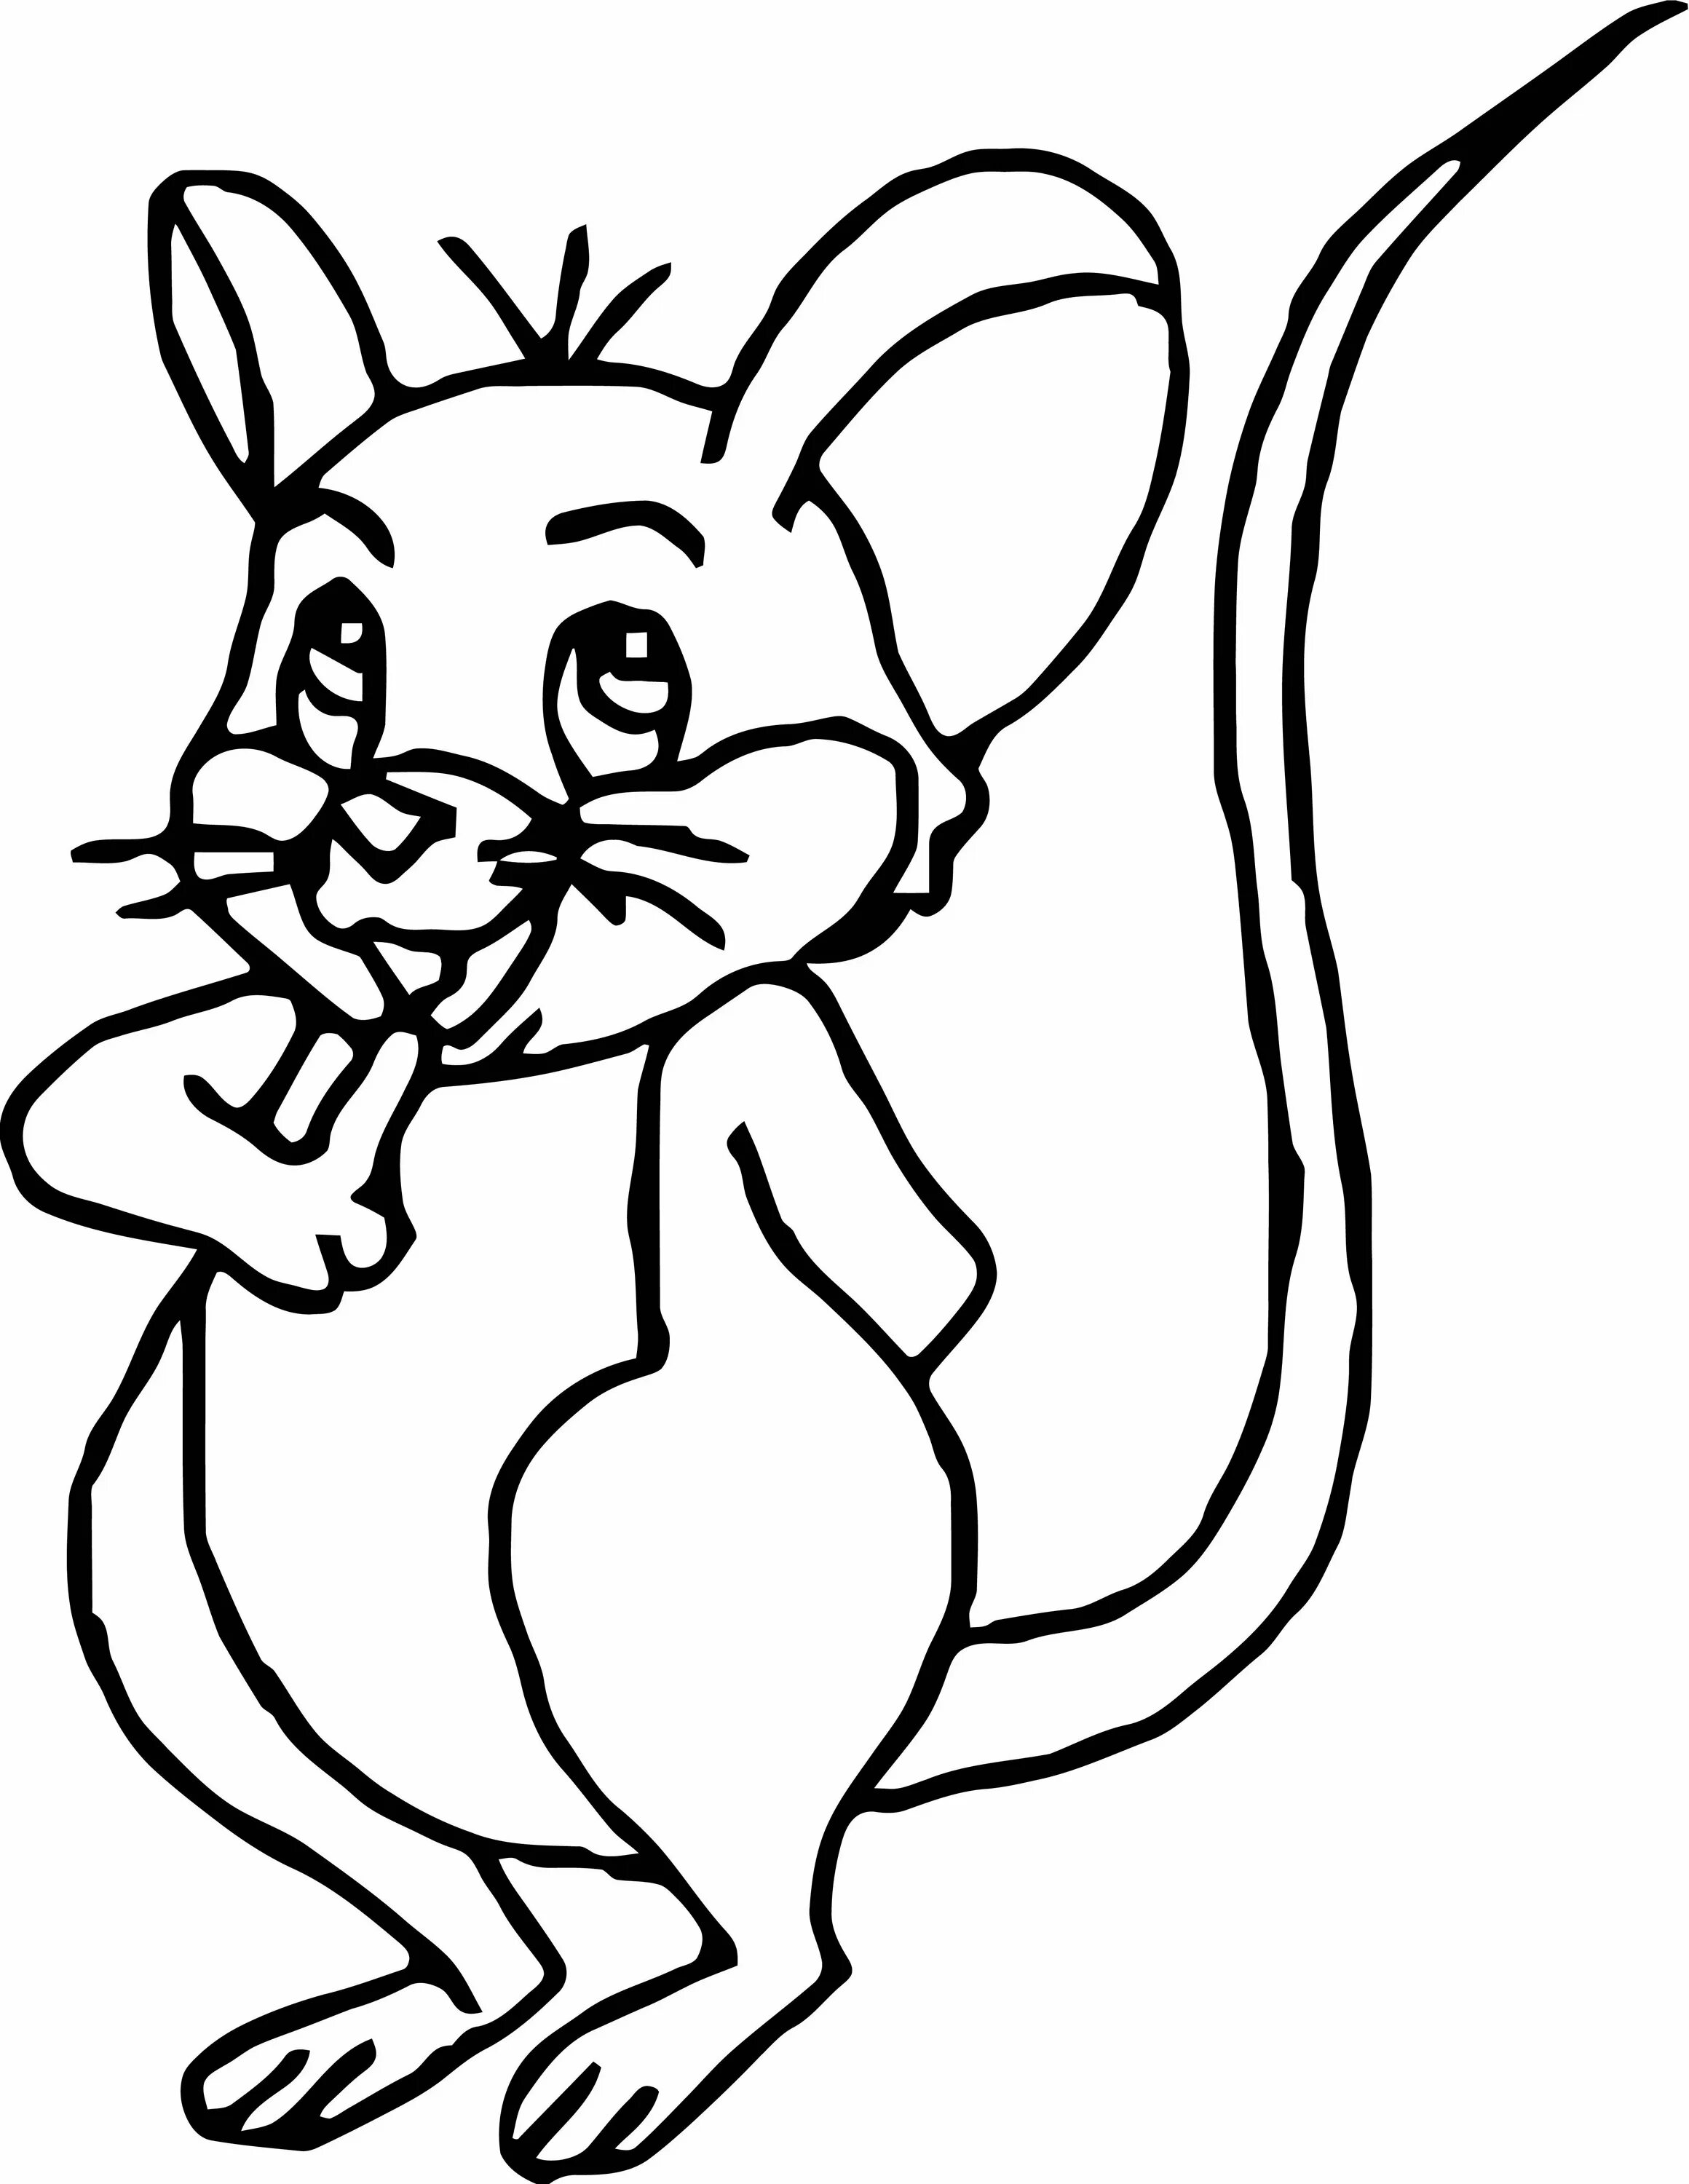 Раскраска мышка. Мышь раскраска для детей. Мышка раскраска для детей. Мышонок раскраска для детей. Раскраска мышь распечатать